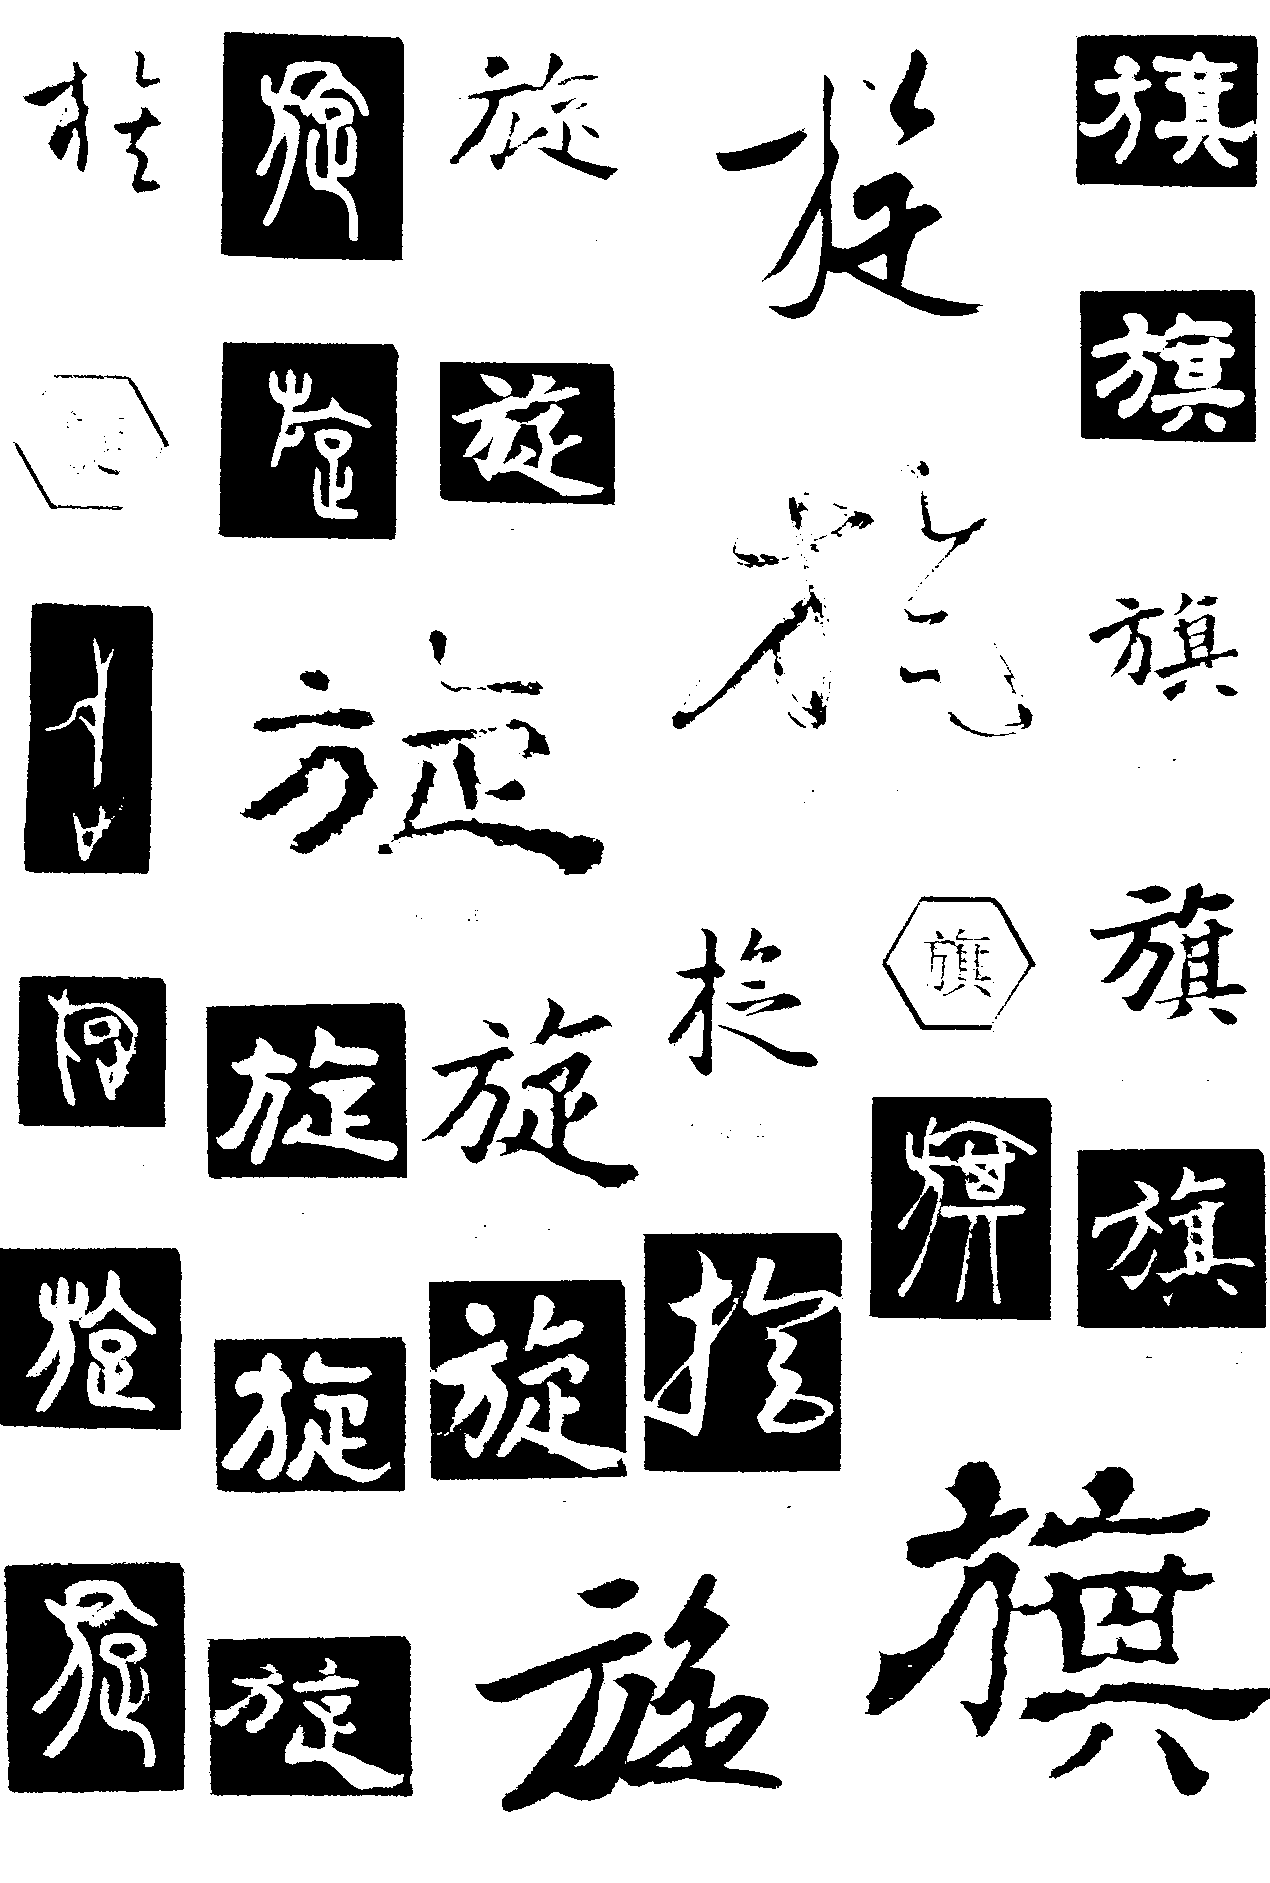 族旋旗 艺术字 毛笔字 书法字 繁体 标志设计